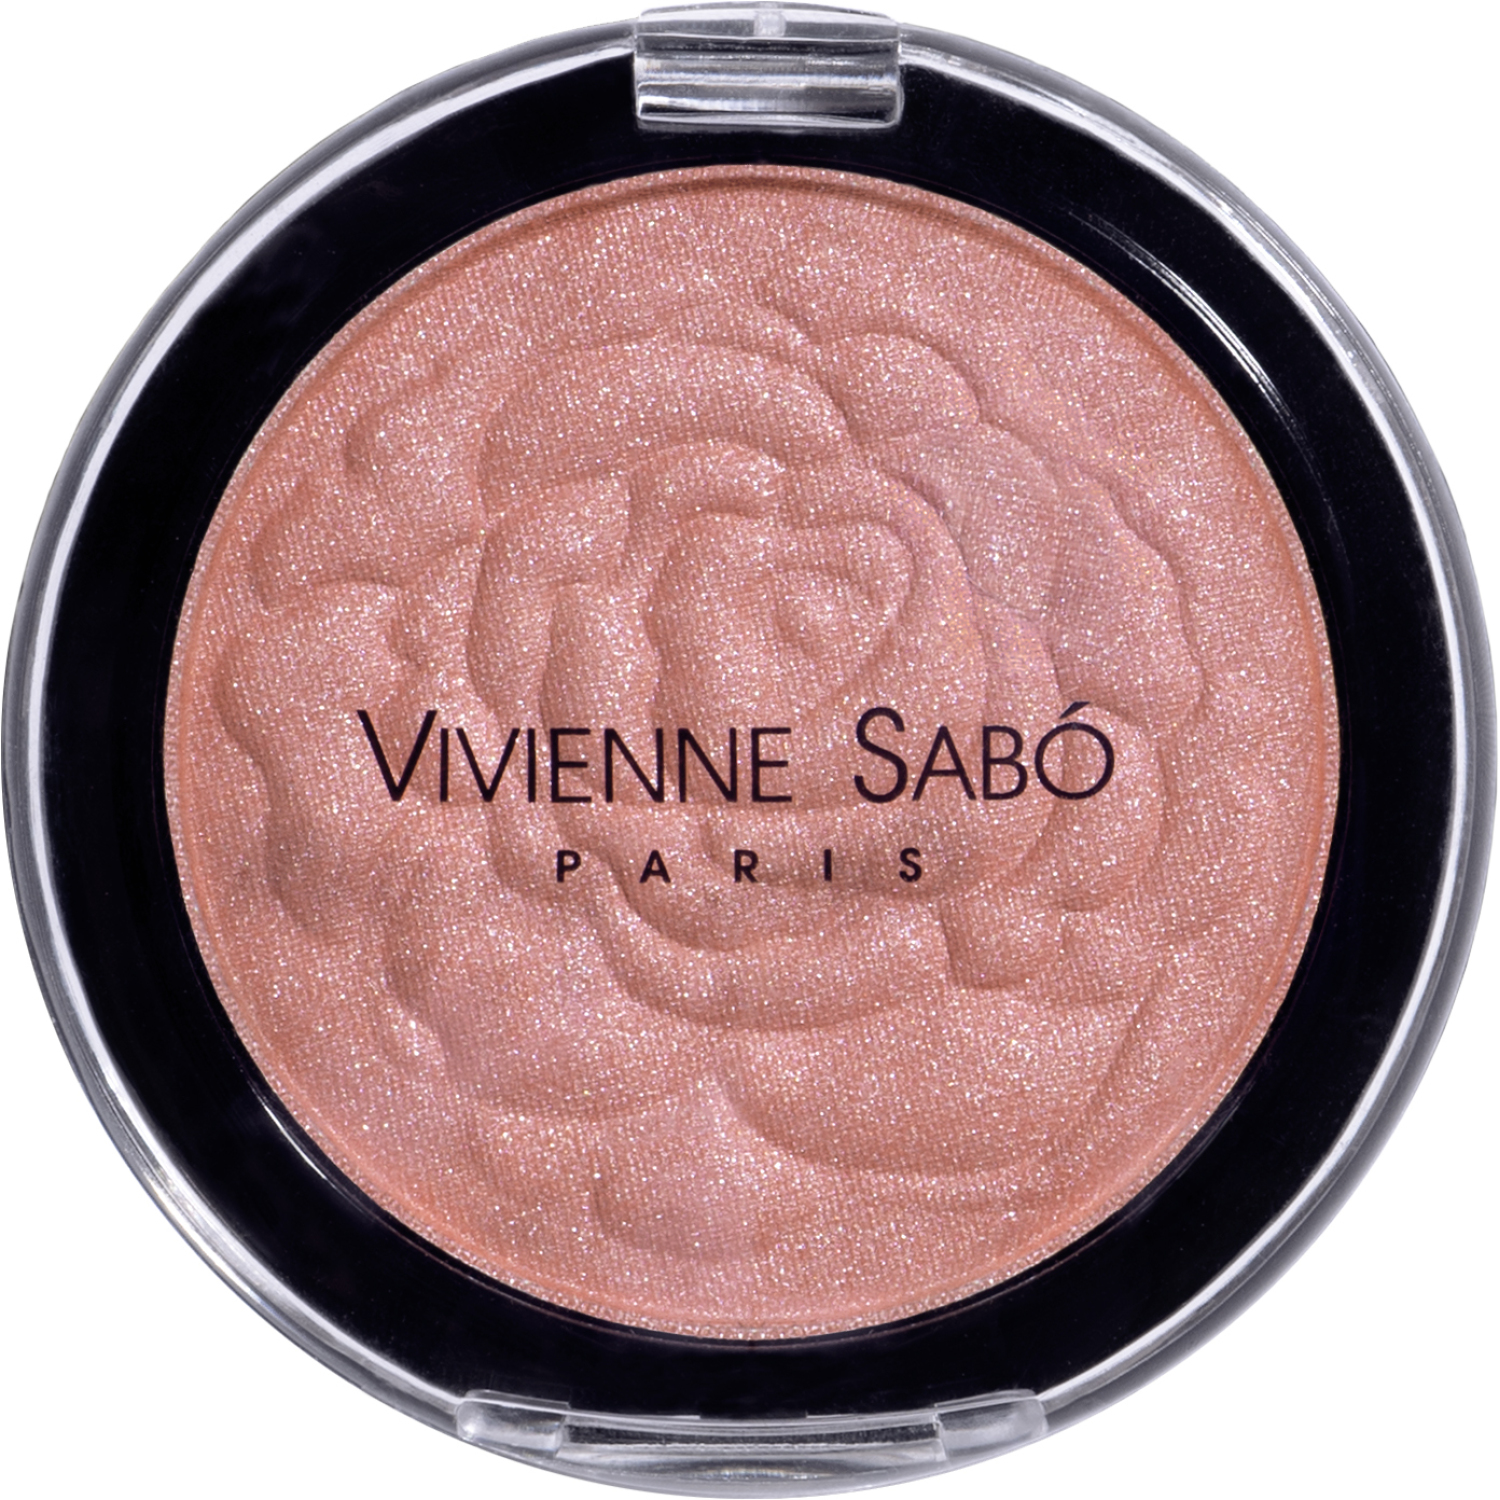 Румяна рельефные Vivienne Sabo ROSE DE VELOURS, мерцающий эффект на коже, аромат роз, тон 24, темно-розовый, 5 гр